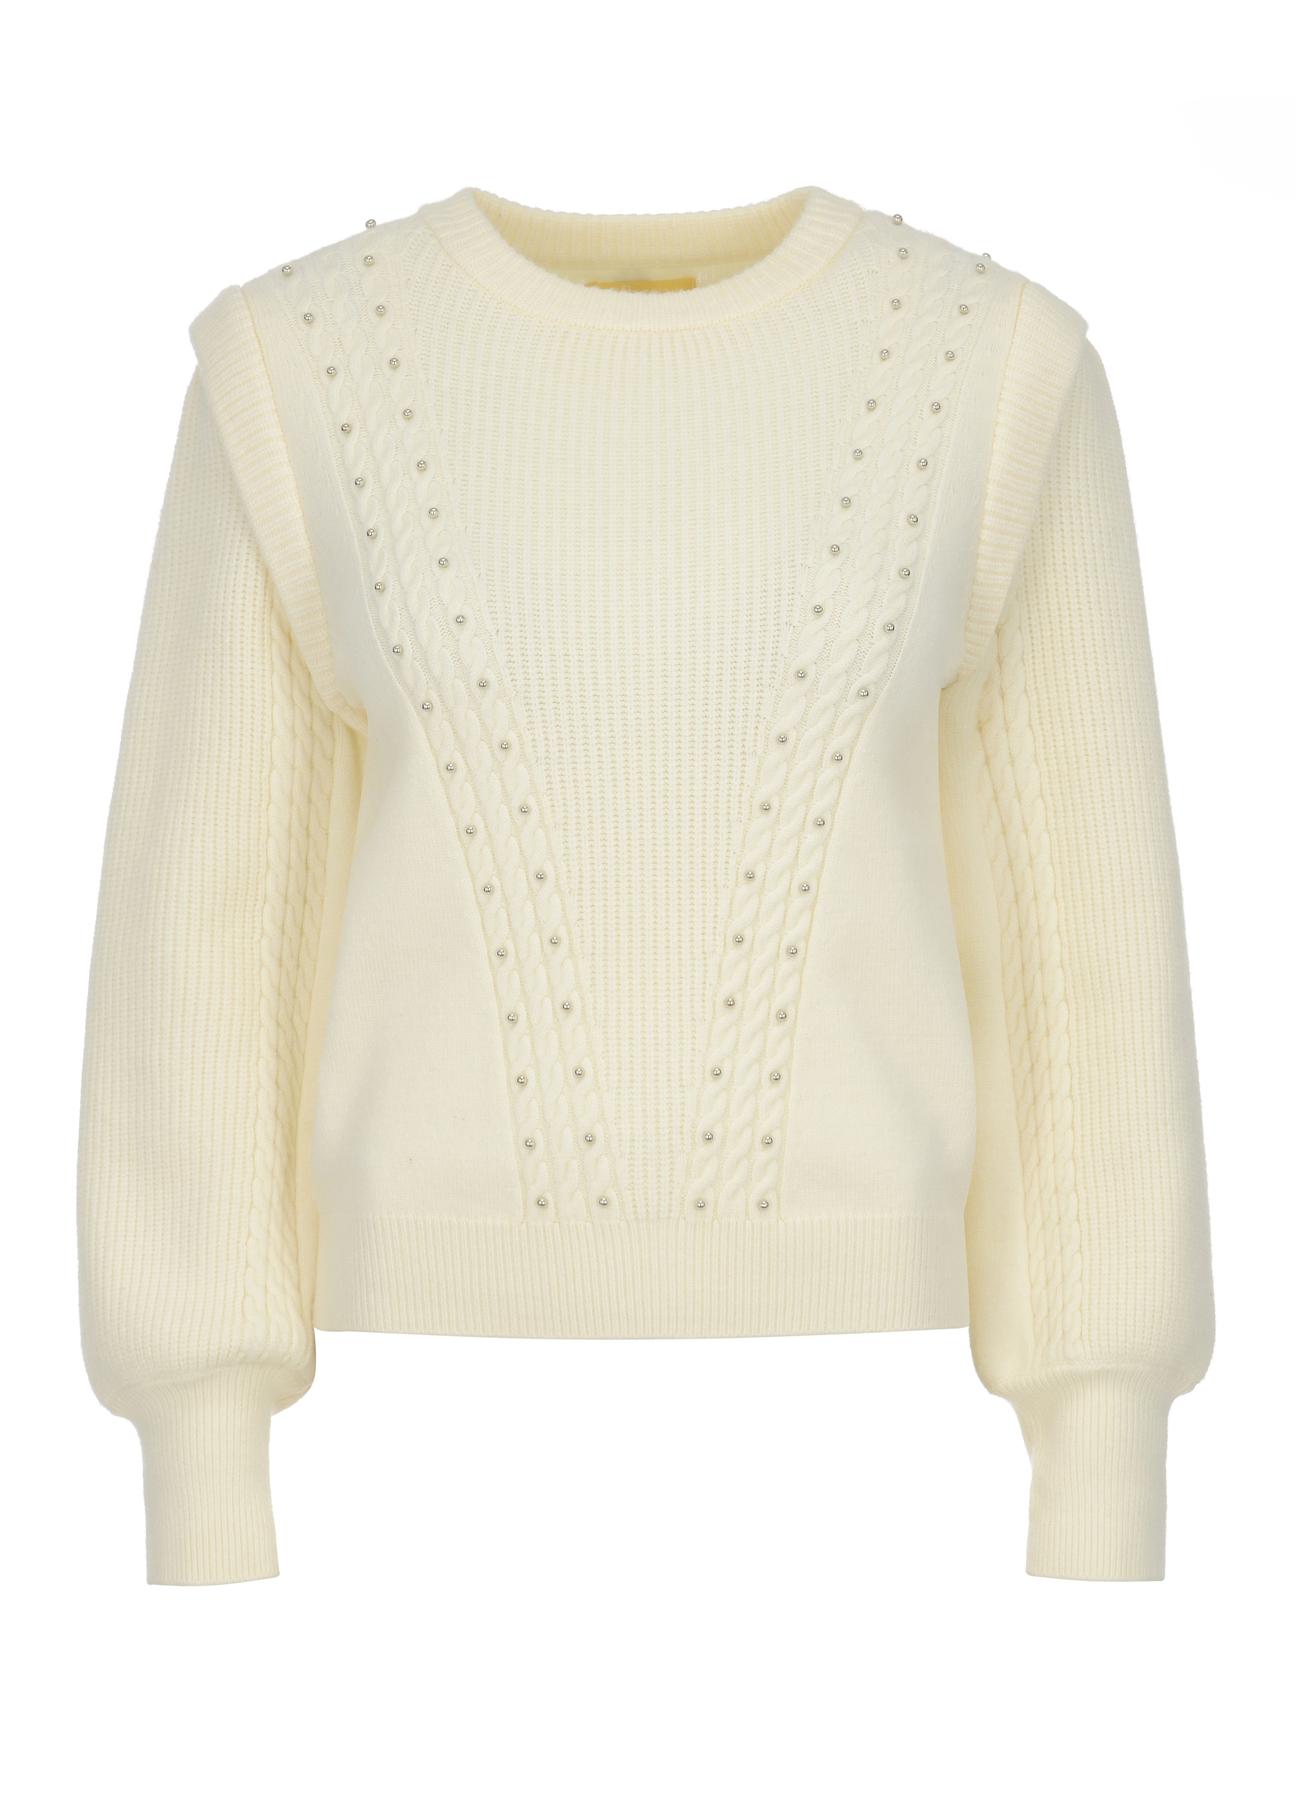 Kremowy sweter damski SWEDT-0168-12(Z22)